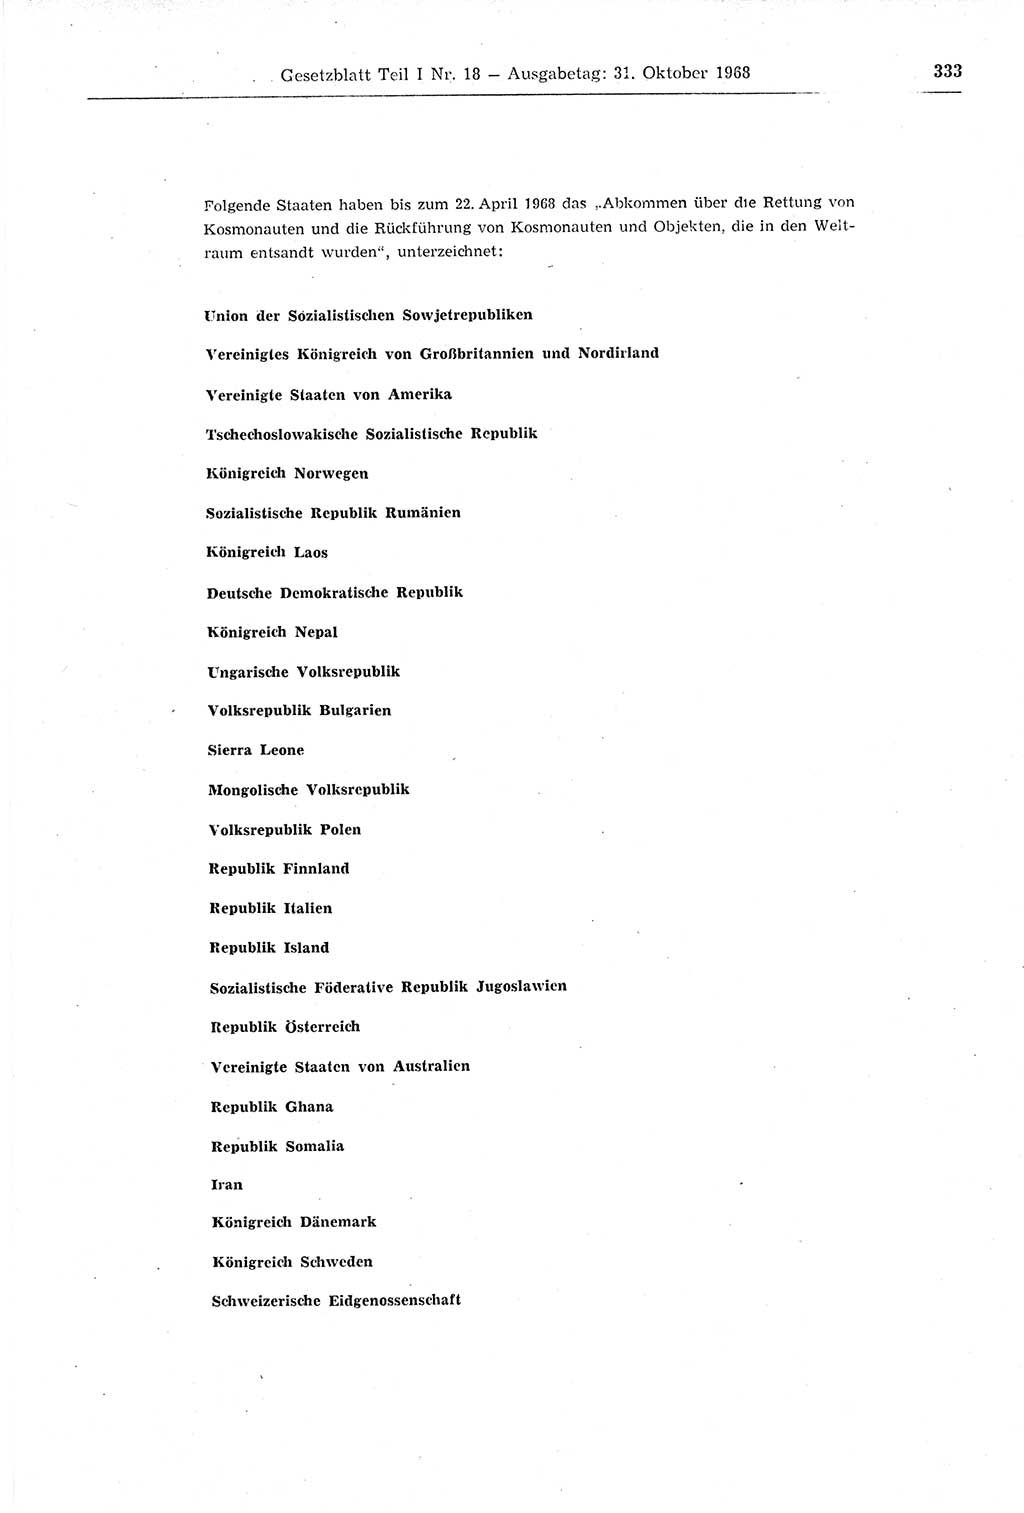 Gesetzblatt (GBl.) der Deutschen Demokratischen Republik (DDR) Teil Ⅰ 1968, Seite 333 (GBl. DDR Ⅰ 1968, S. 333)